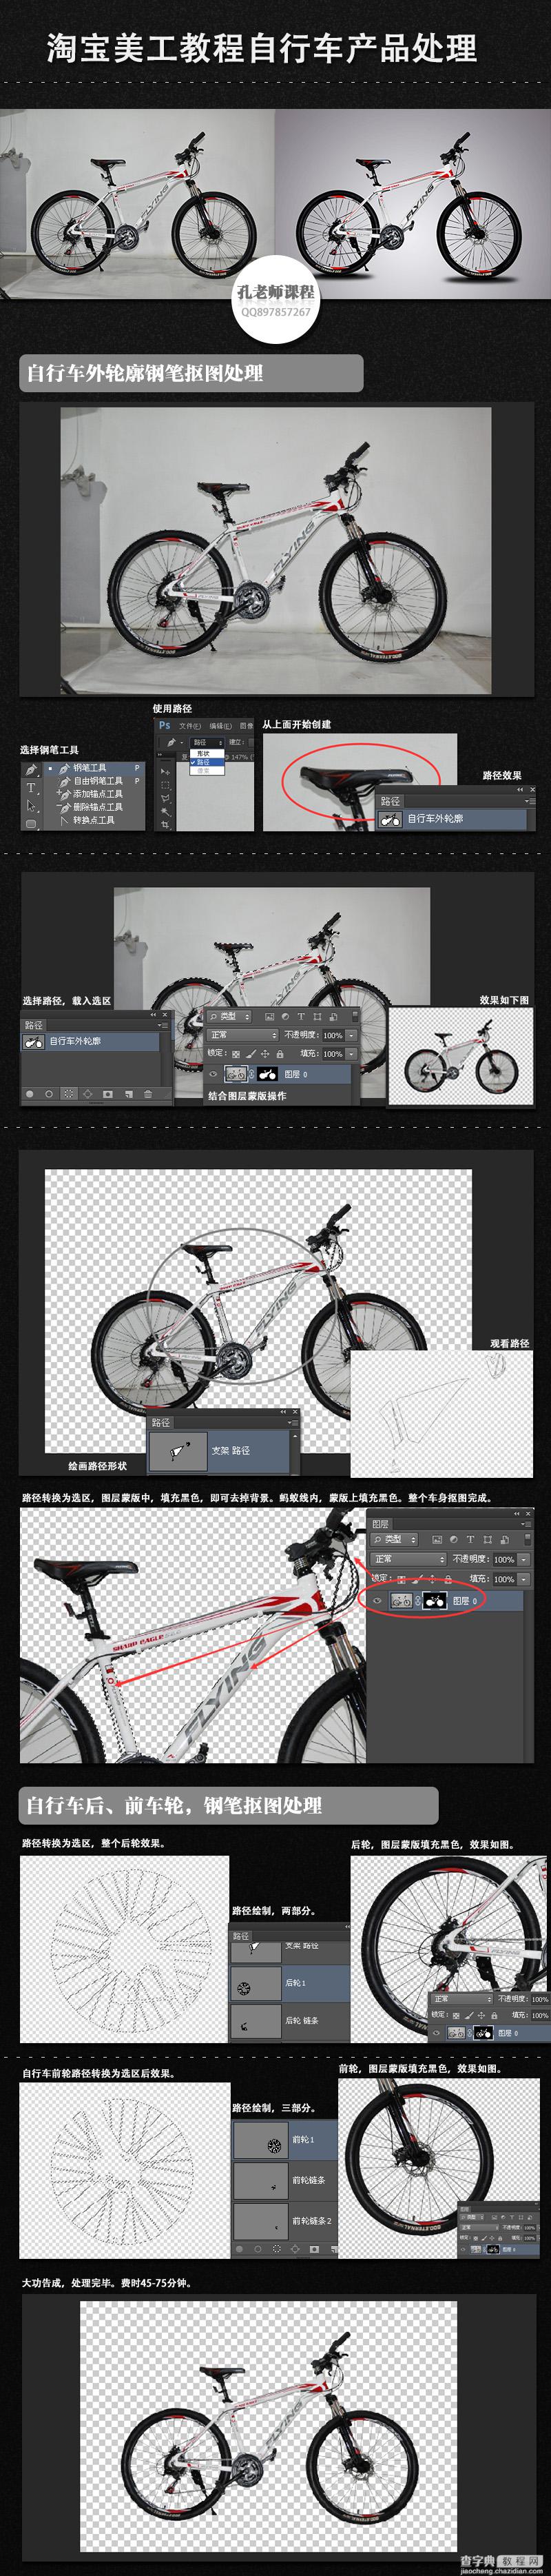 淘宝美工教程 Photoshop自行车产品修图处理1